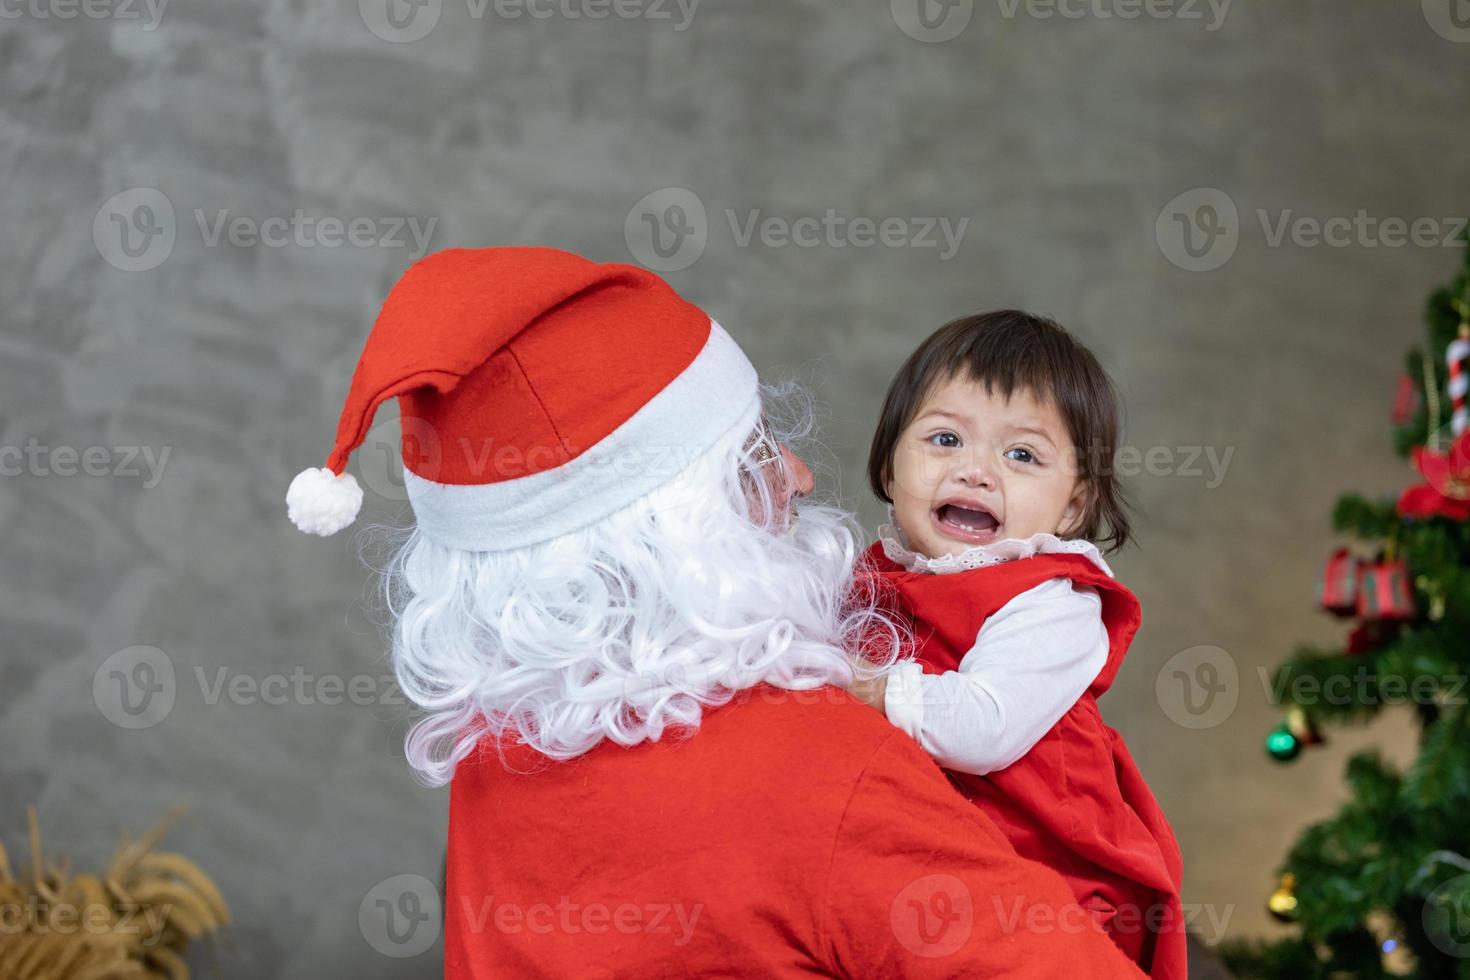 de kerstman claus is hijs- gelukkig weinig kleuter baby meisje omhoog en lachend vrolijk met ten volle versierd Kerstmis boom Aan de terug voor seizoen viering foto